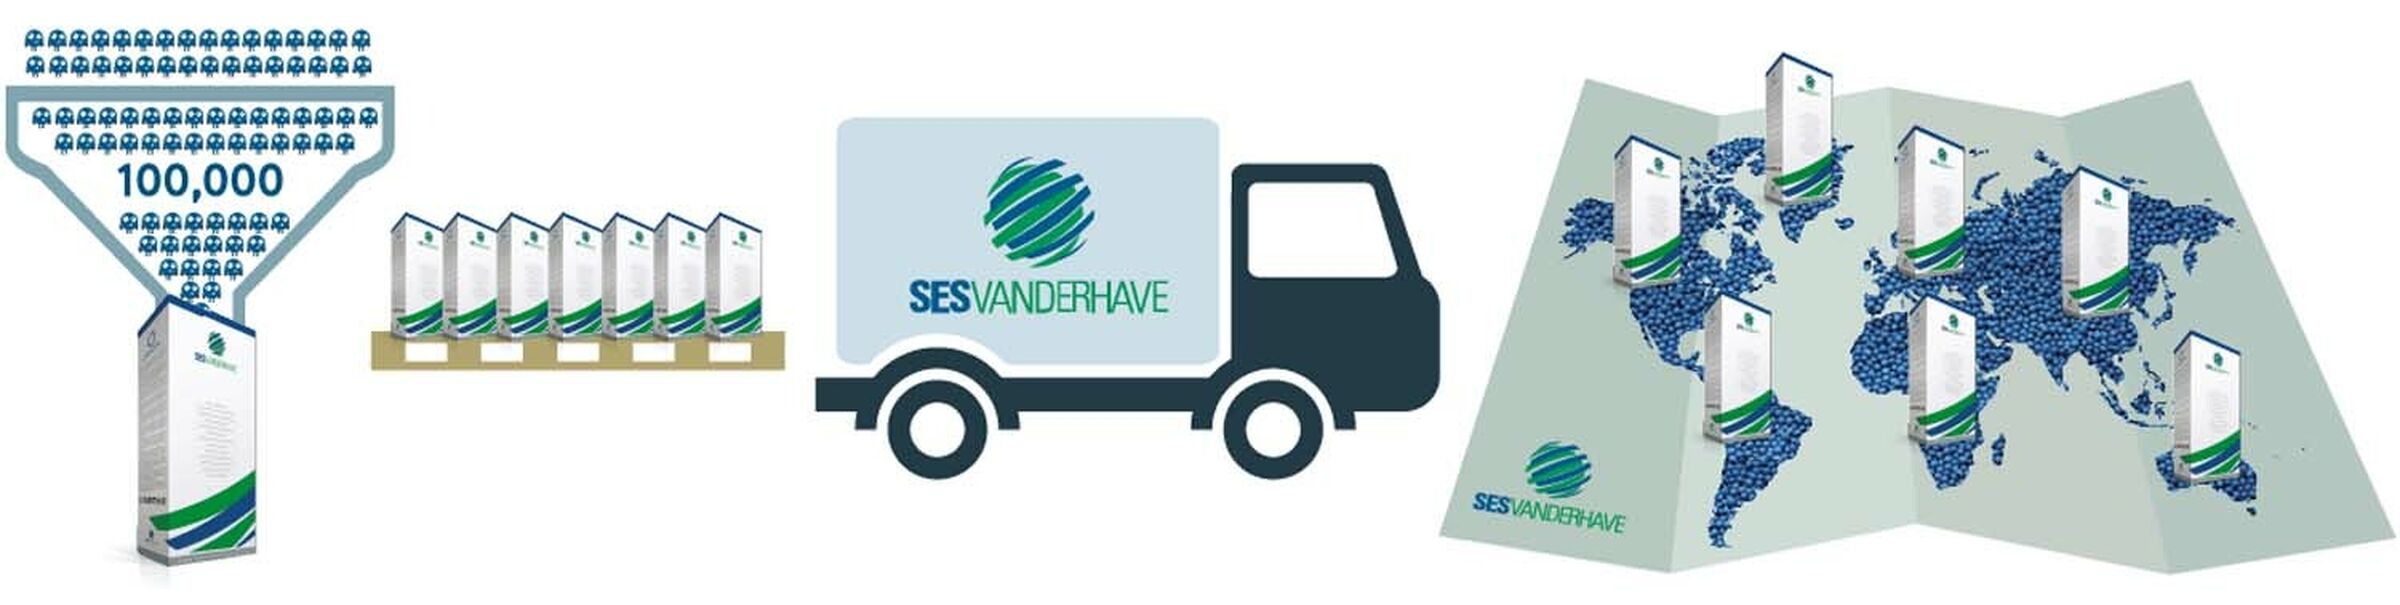 SESVanderhave Nederland suikerbieten zaadverwerking verpakking